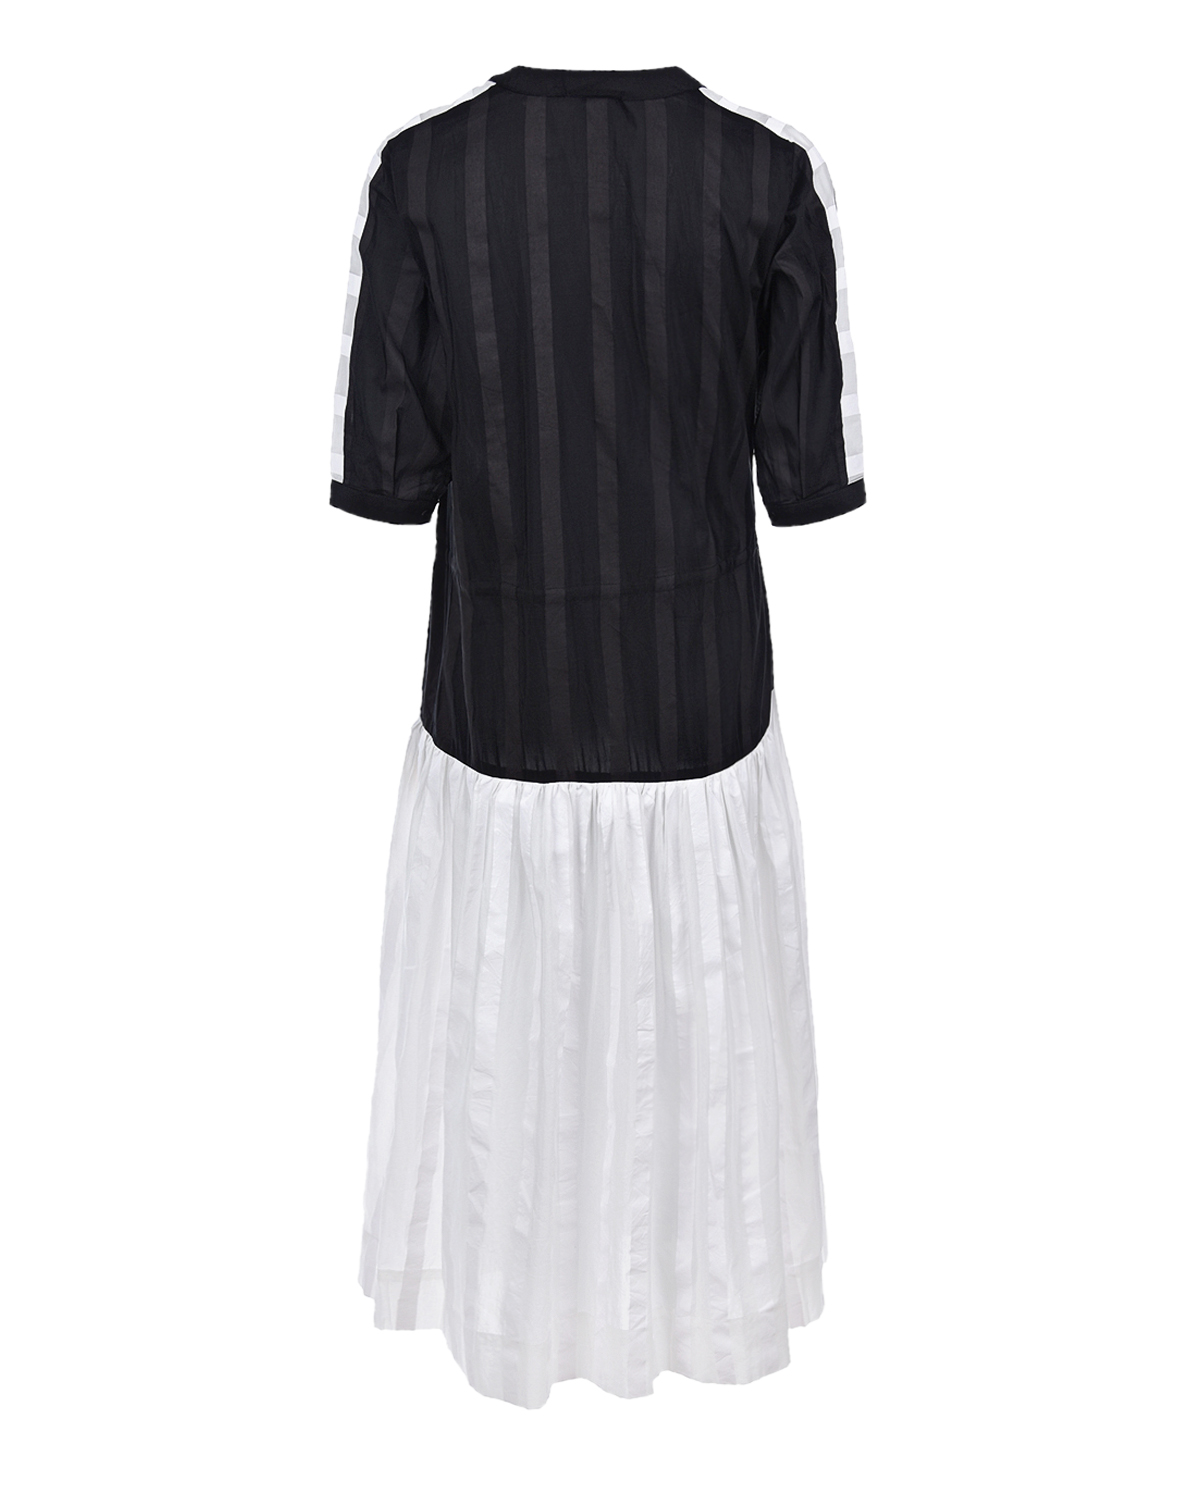 Черно-белое платье LOVE BIRDS, размер 40, цвет черный - фото 5